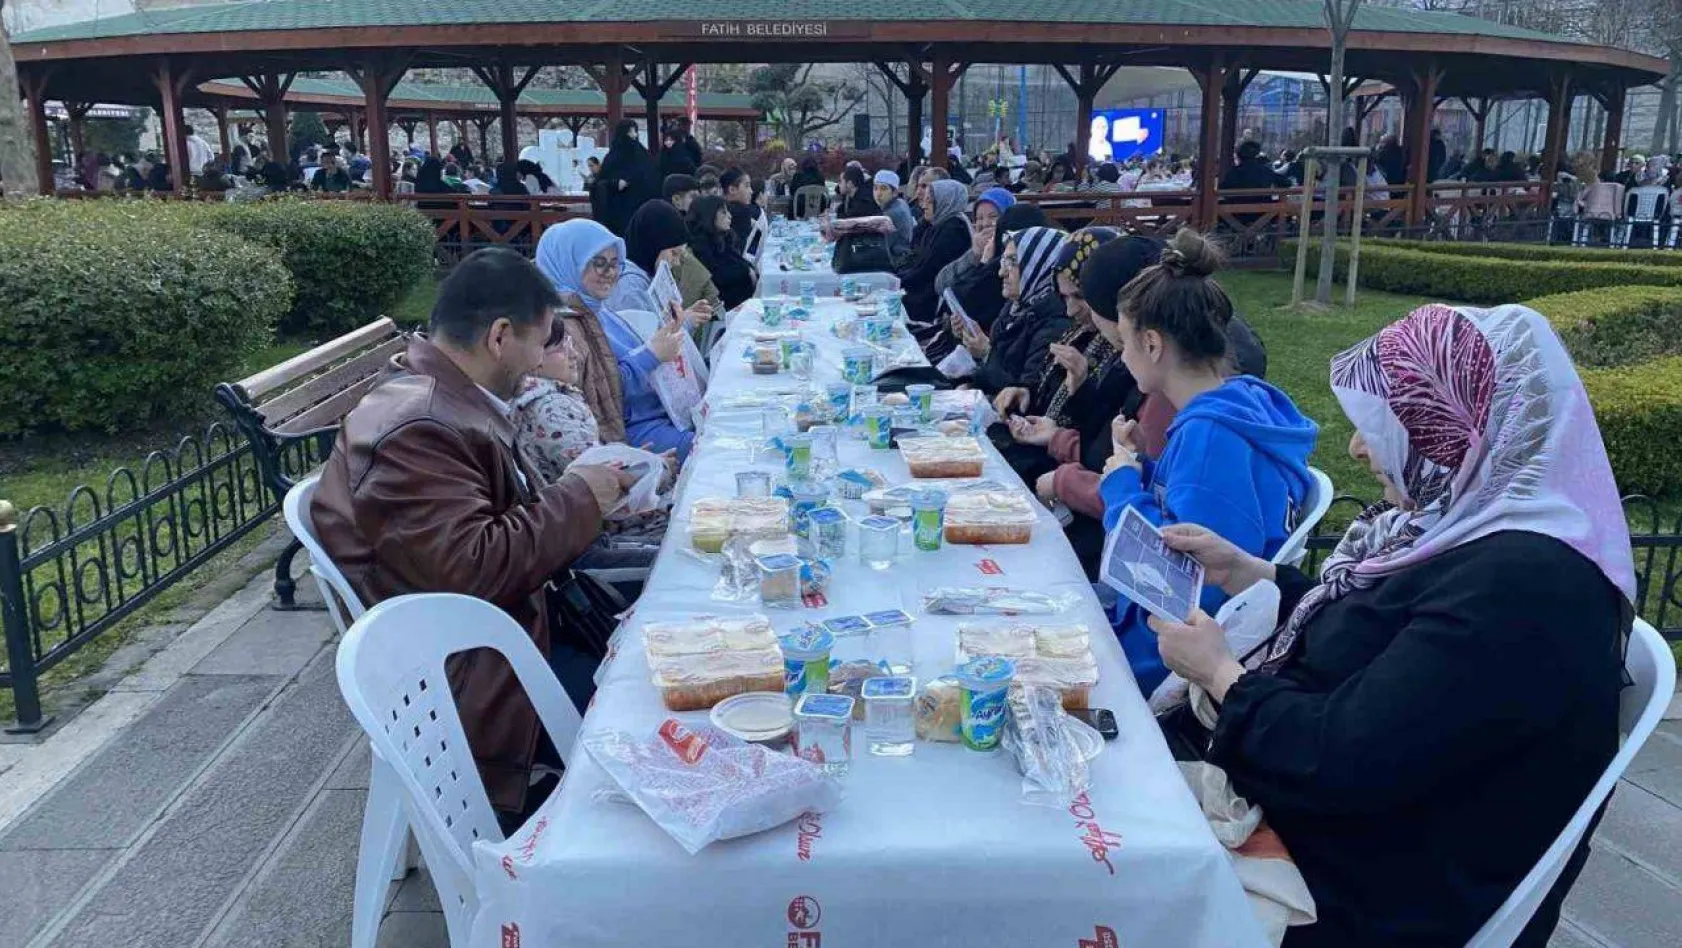 Fatih'te 5 bin kişi iftar sofrasında buluştu